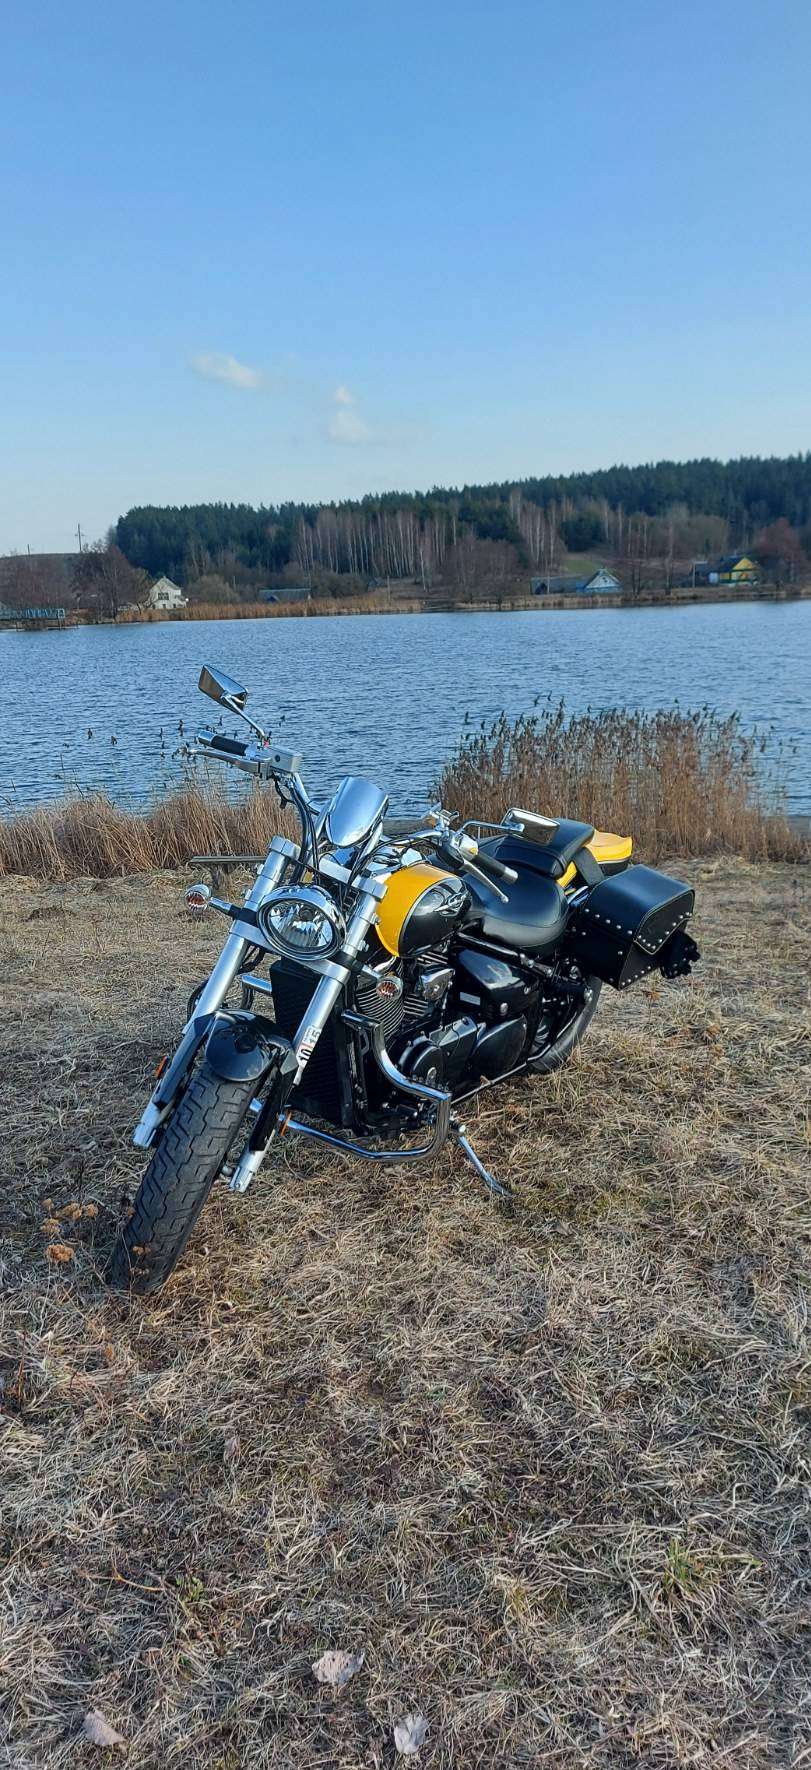 Купить мотоцикл Suzuki Boulevard в Беларуси в кредит - цены, характеристики, фото. в Беларуси в кредит